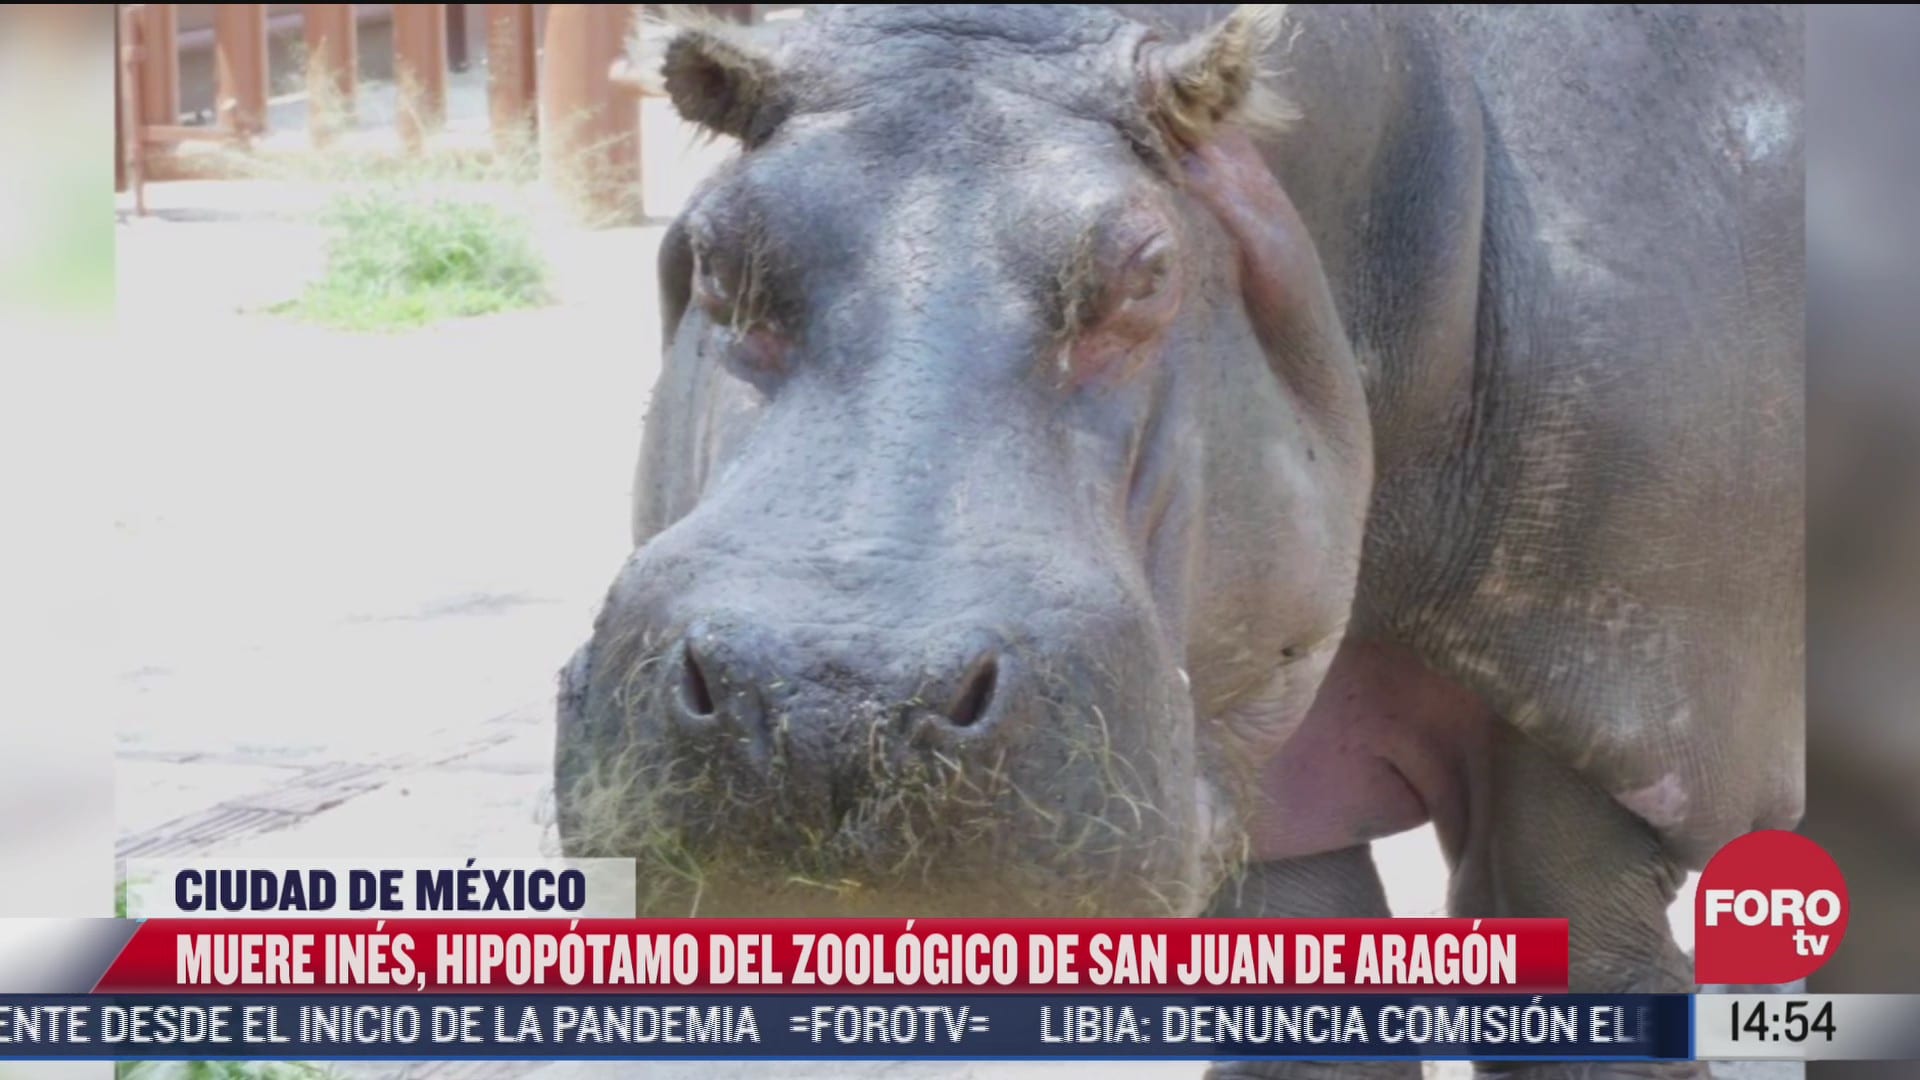 muere la hipopotamo de mayor edad del zoologico de aragon